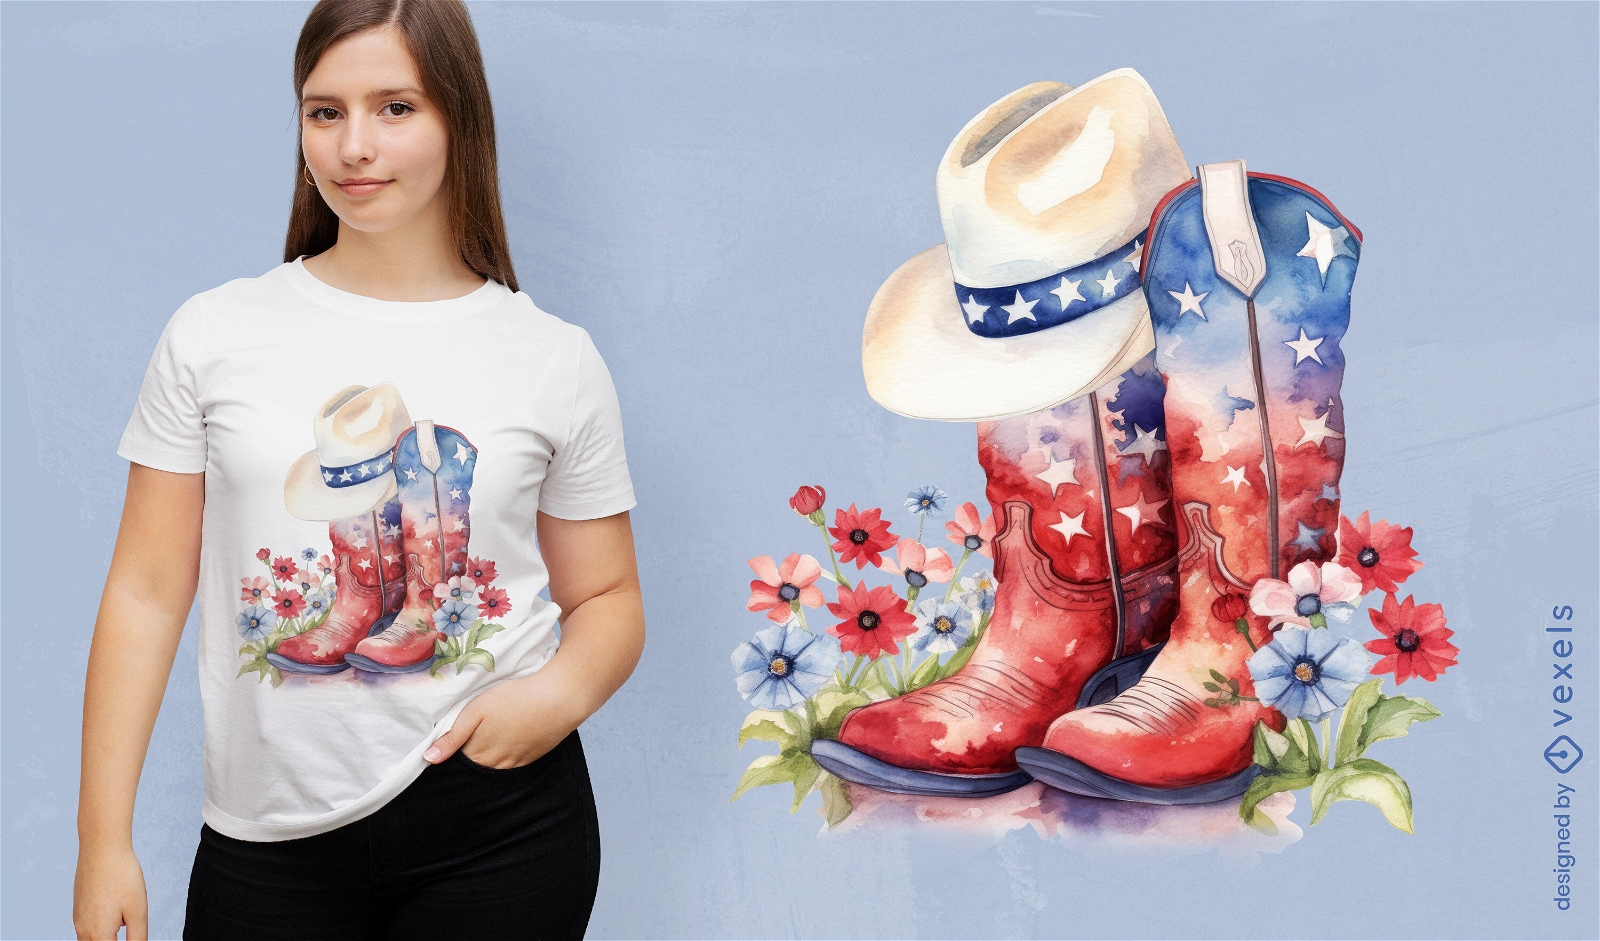 Diseño de camiseta de botas americanas y sombrero de vaquero.